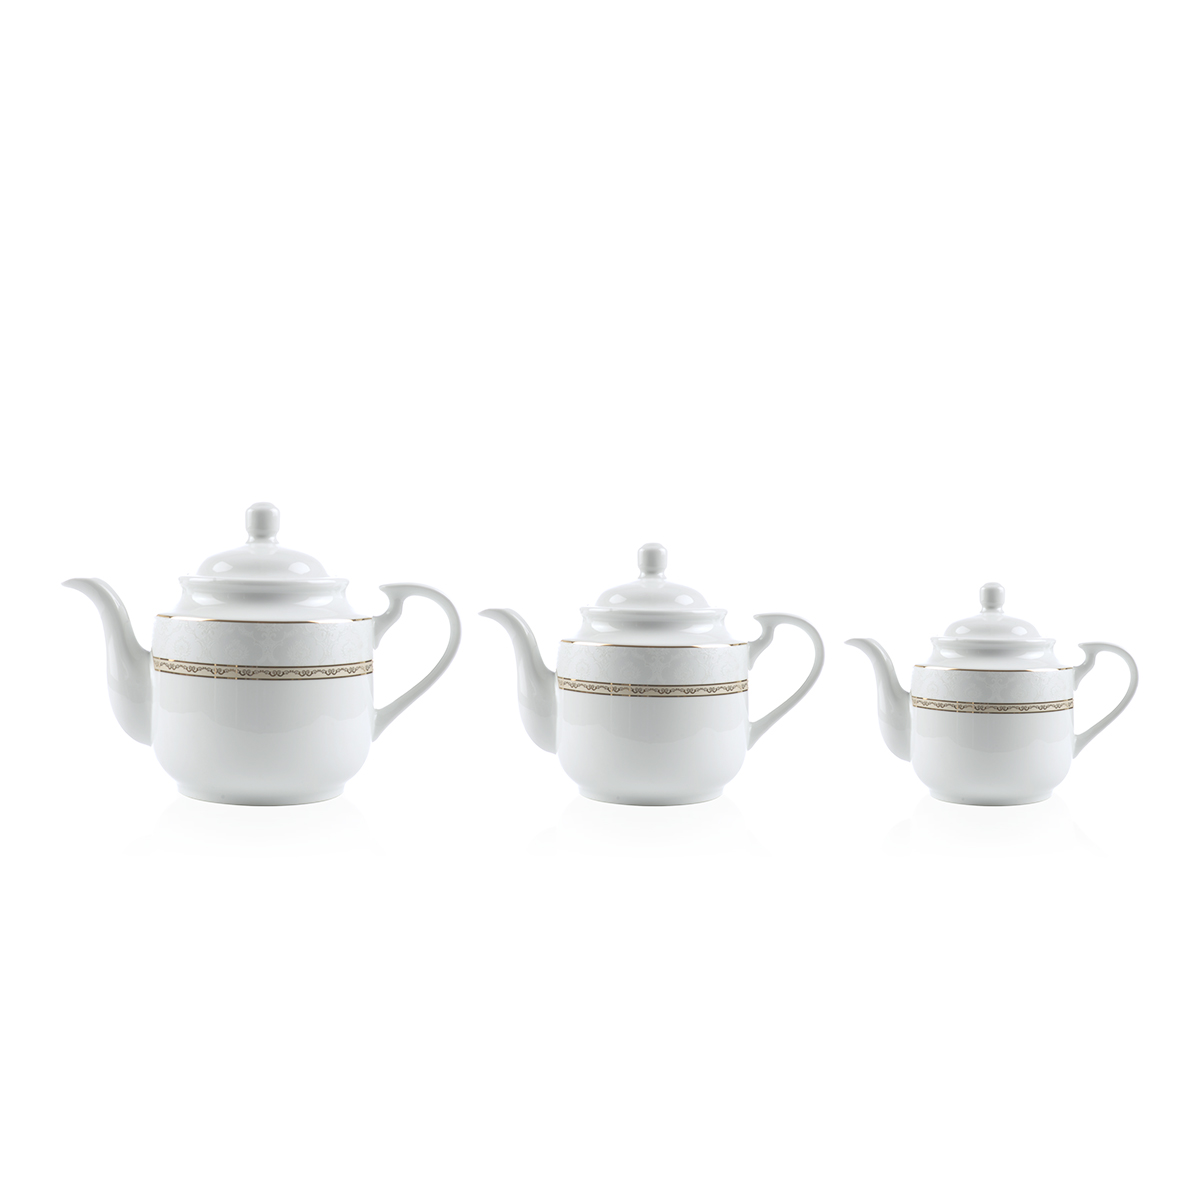 سرویس 6 پارچه قوری چای استوانه هدیه طلایی